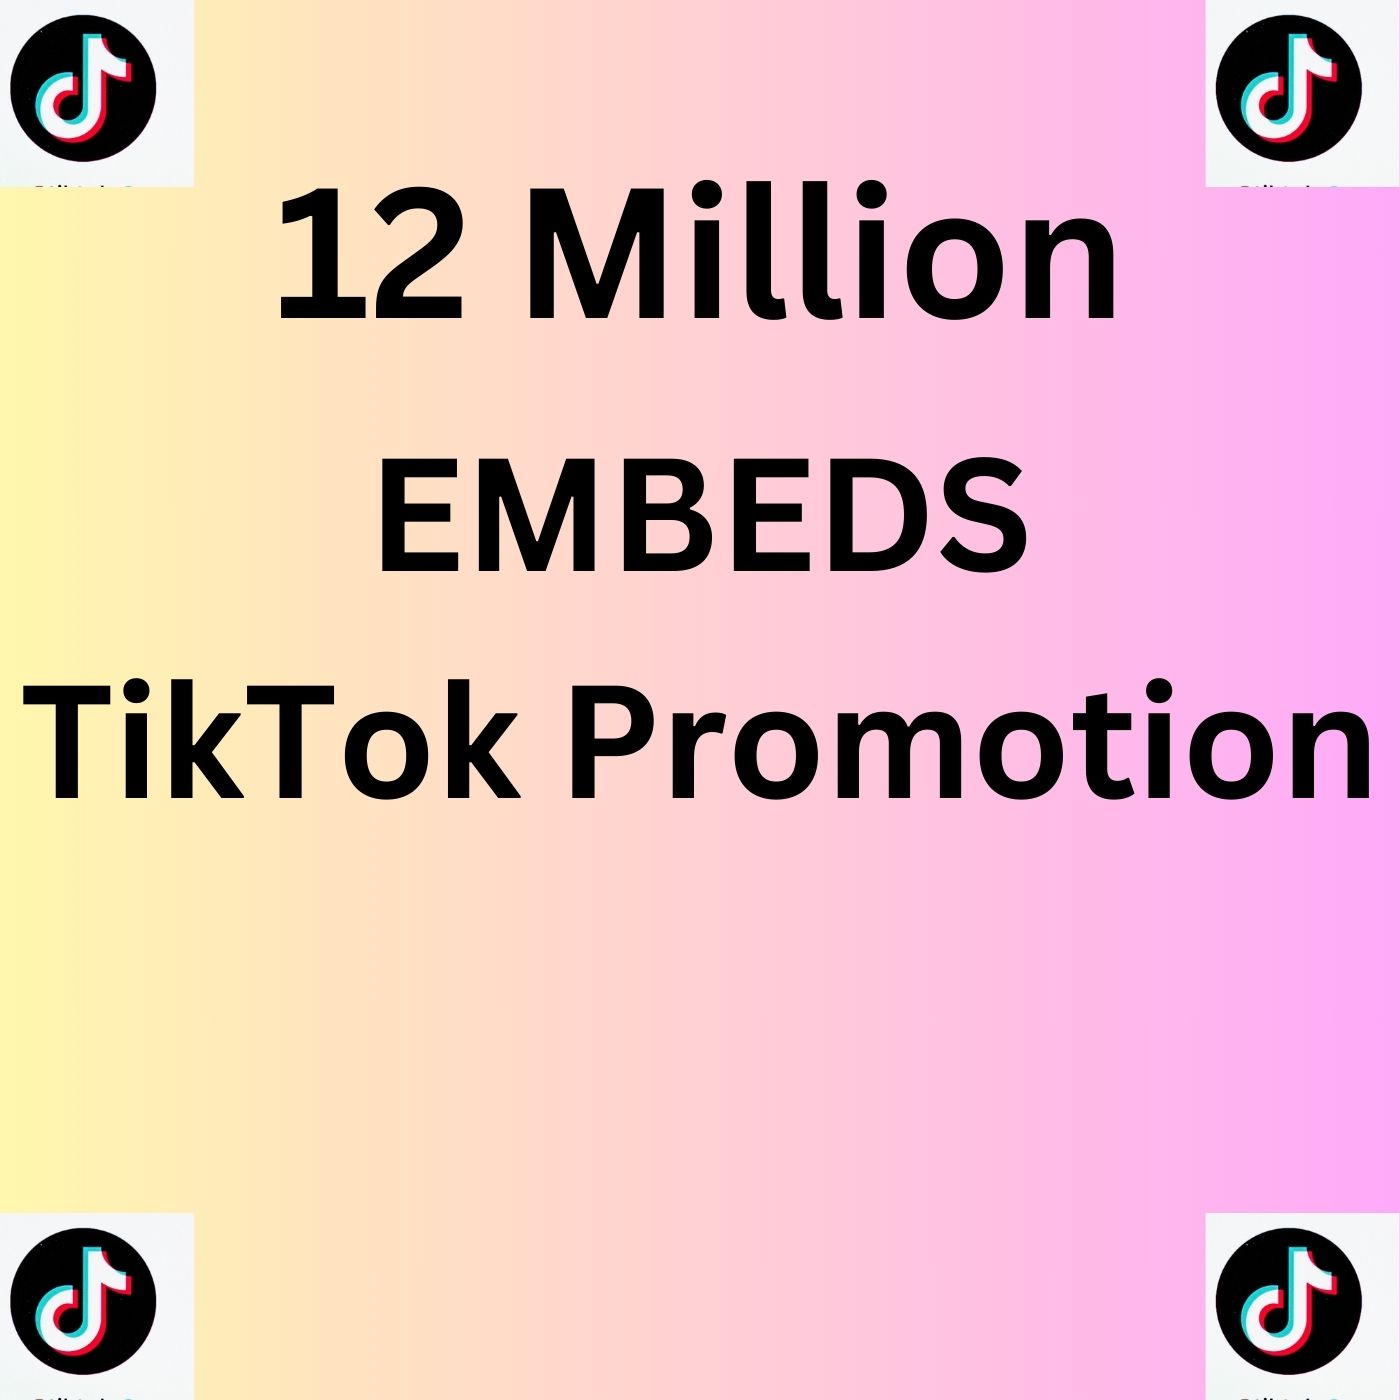 Get 12 Million TikTok Video Embeds!